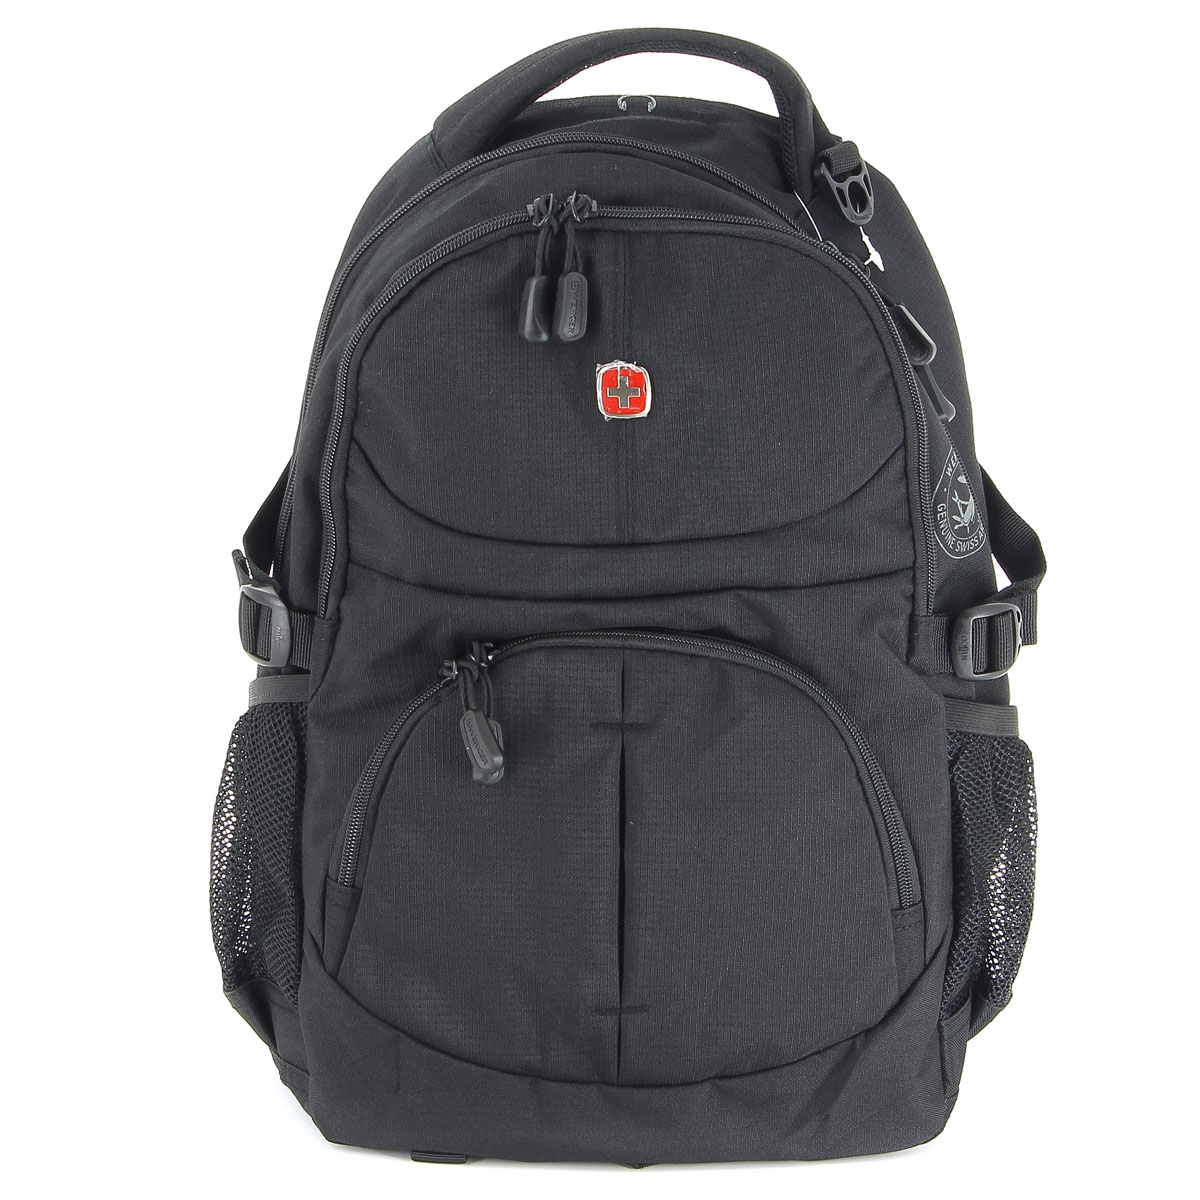 Рюкзак Wenger, цвет: черный, 33 см х 15 см х 45 см, 22 л